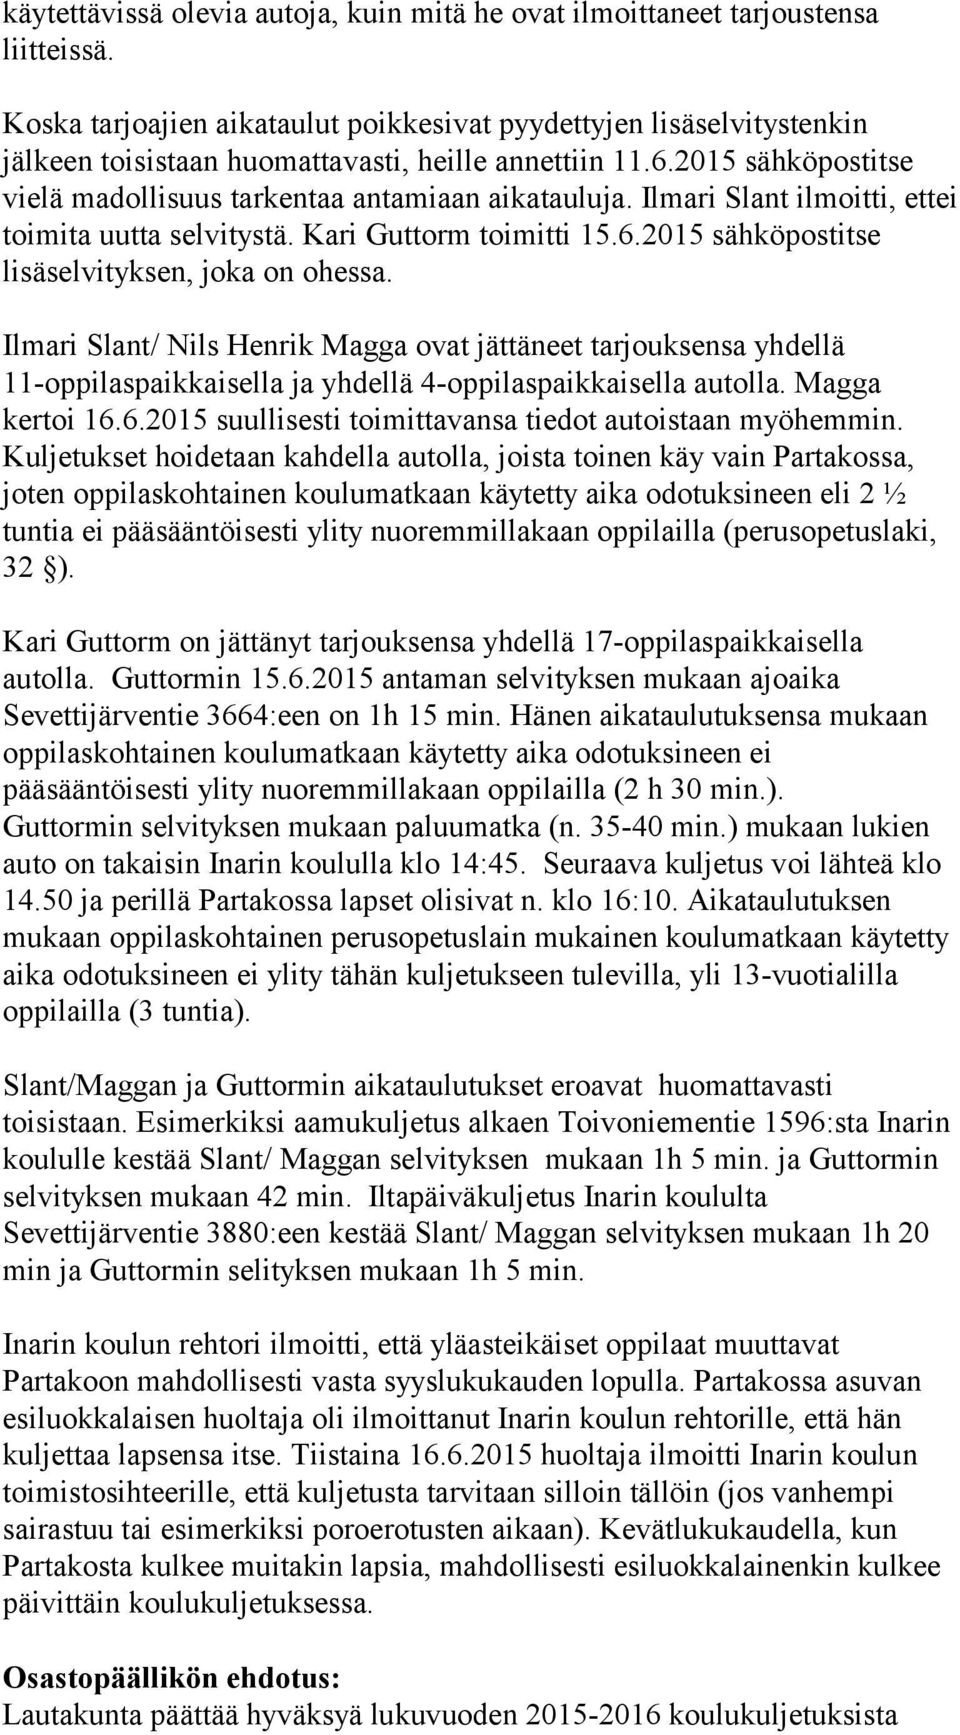 Ilmari Slant ilmoitti, ettei toimita uutta selvitystä. Kari Guttorm toimitti 15.6.2015 sähköpostitse lisäselvityksen, joka on ohessa.